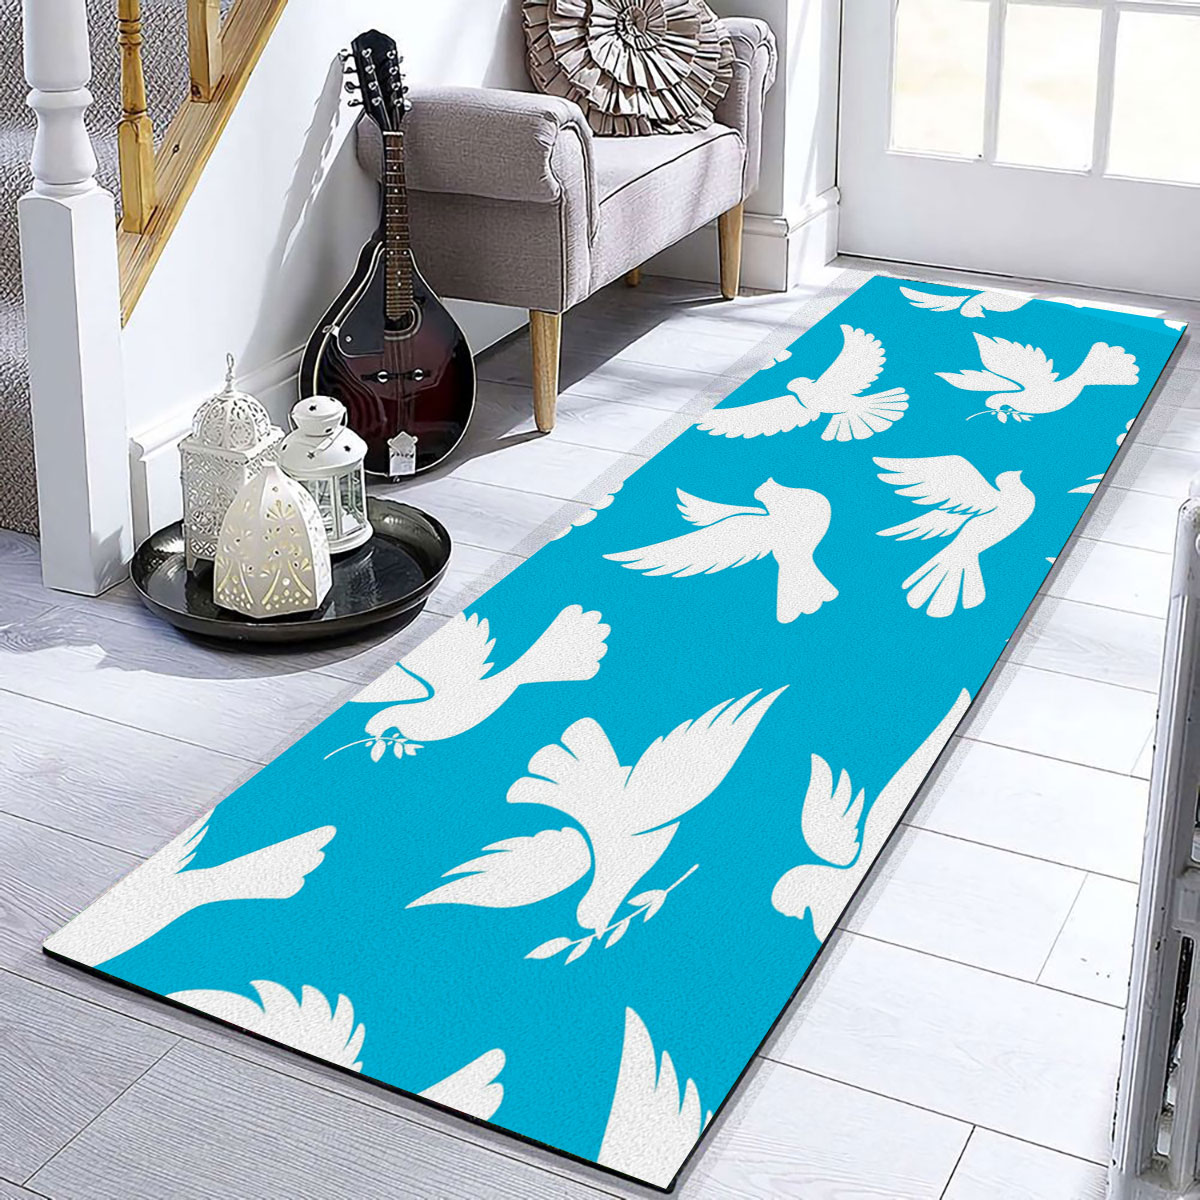 Flying Dove Peace Runner Carpet 6